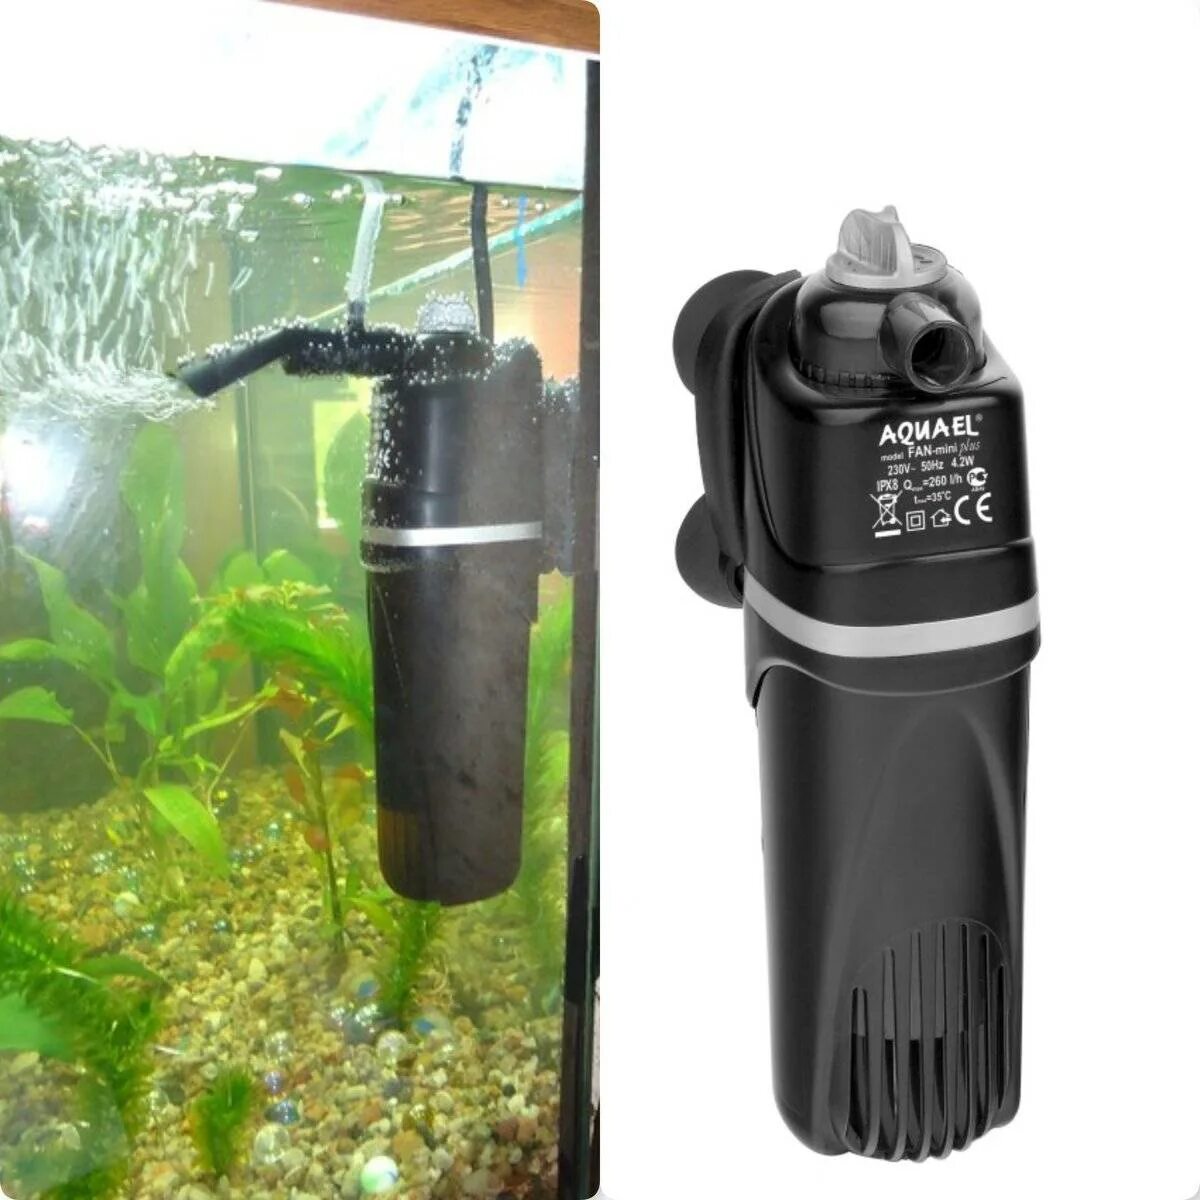 Aquael fan 2. Внешний фильтр Aquael для аквариума на 200 литров. Фильтр акваэль для аквариума 30 литров. Компрессор аквариумный акваэль. Фильтр аквариумный внешний dophh 700.